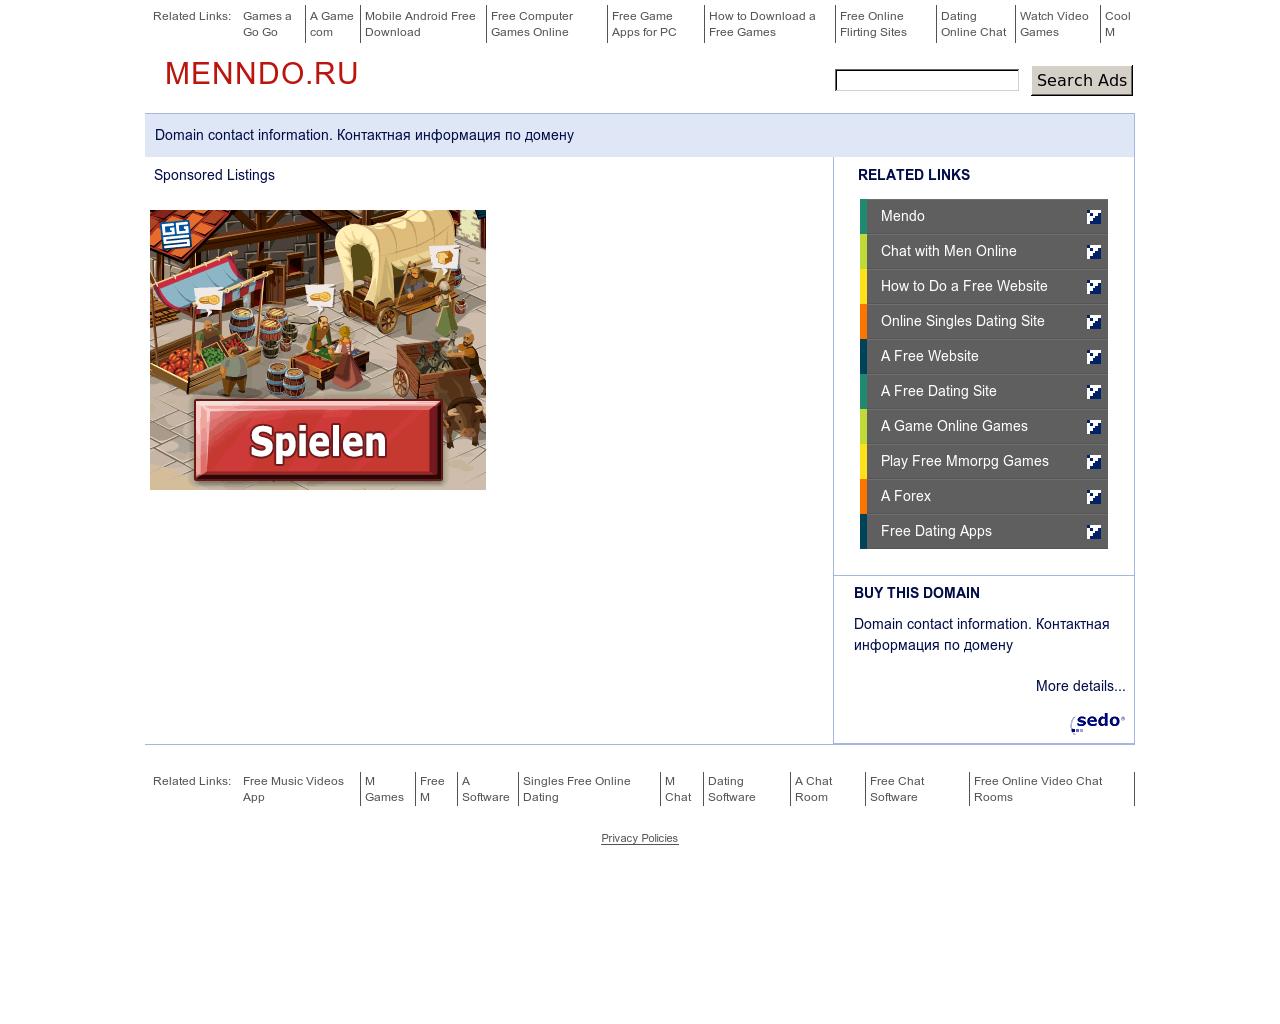 Изображение сайта menndo.ru в разрешении 1280x1024